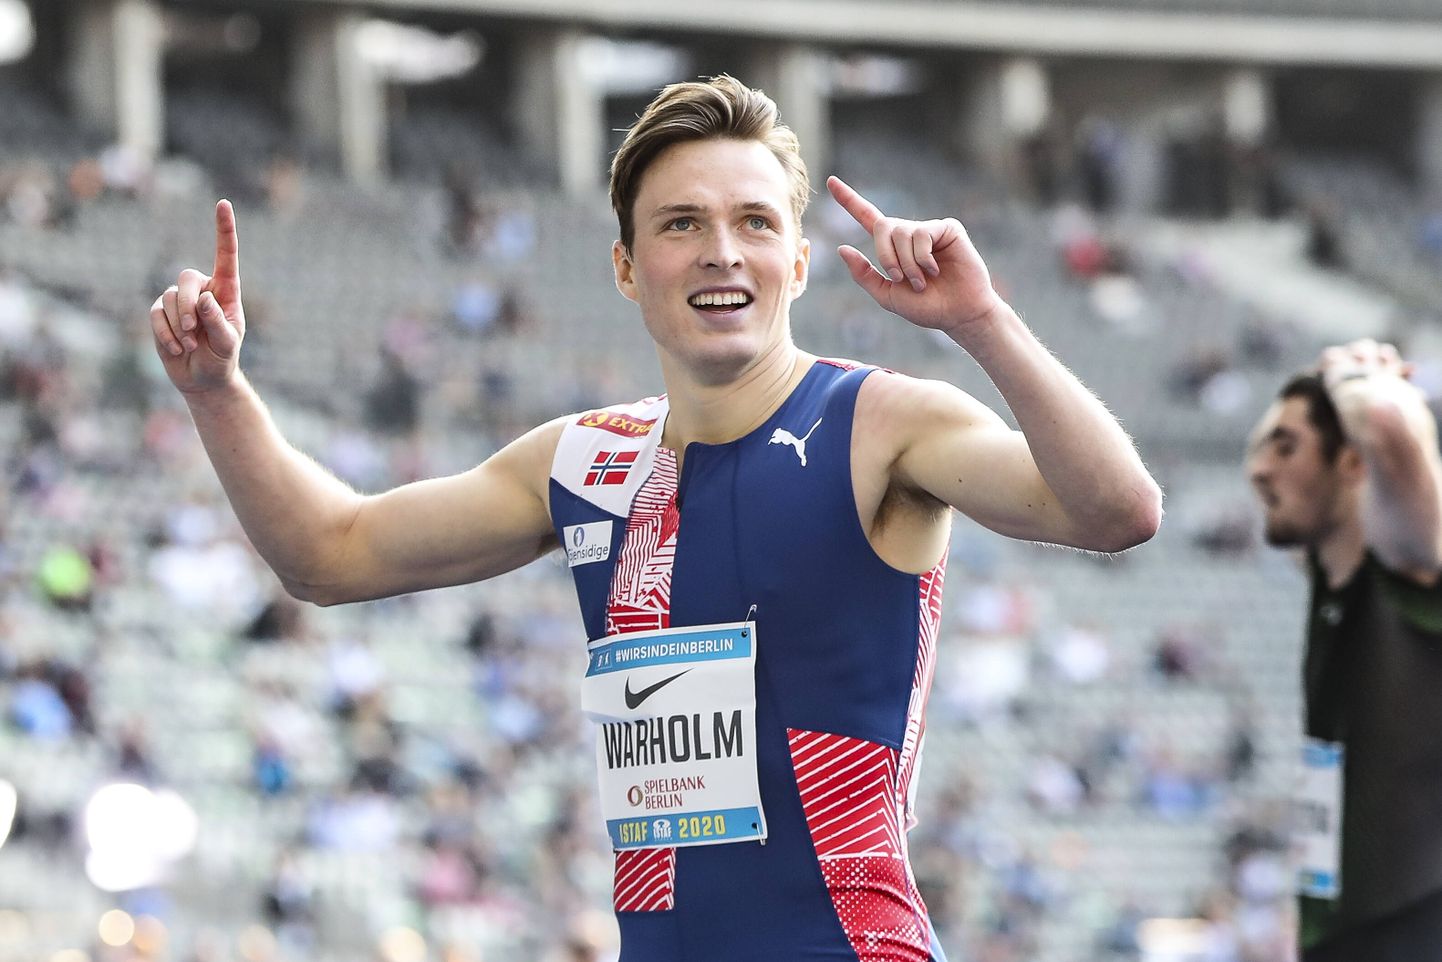 Norra tõkkejooksija Karsten Warholm võitis pühapäeval Berliini Olümpiastaadionil peetud võistlusel 400 meetri tõkkejooksu.